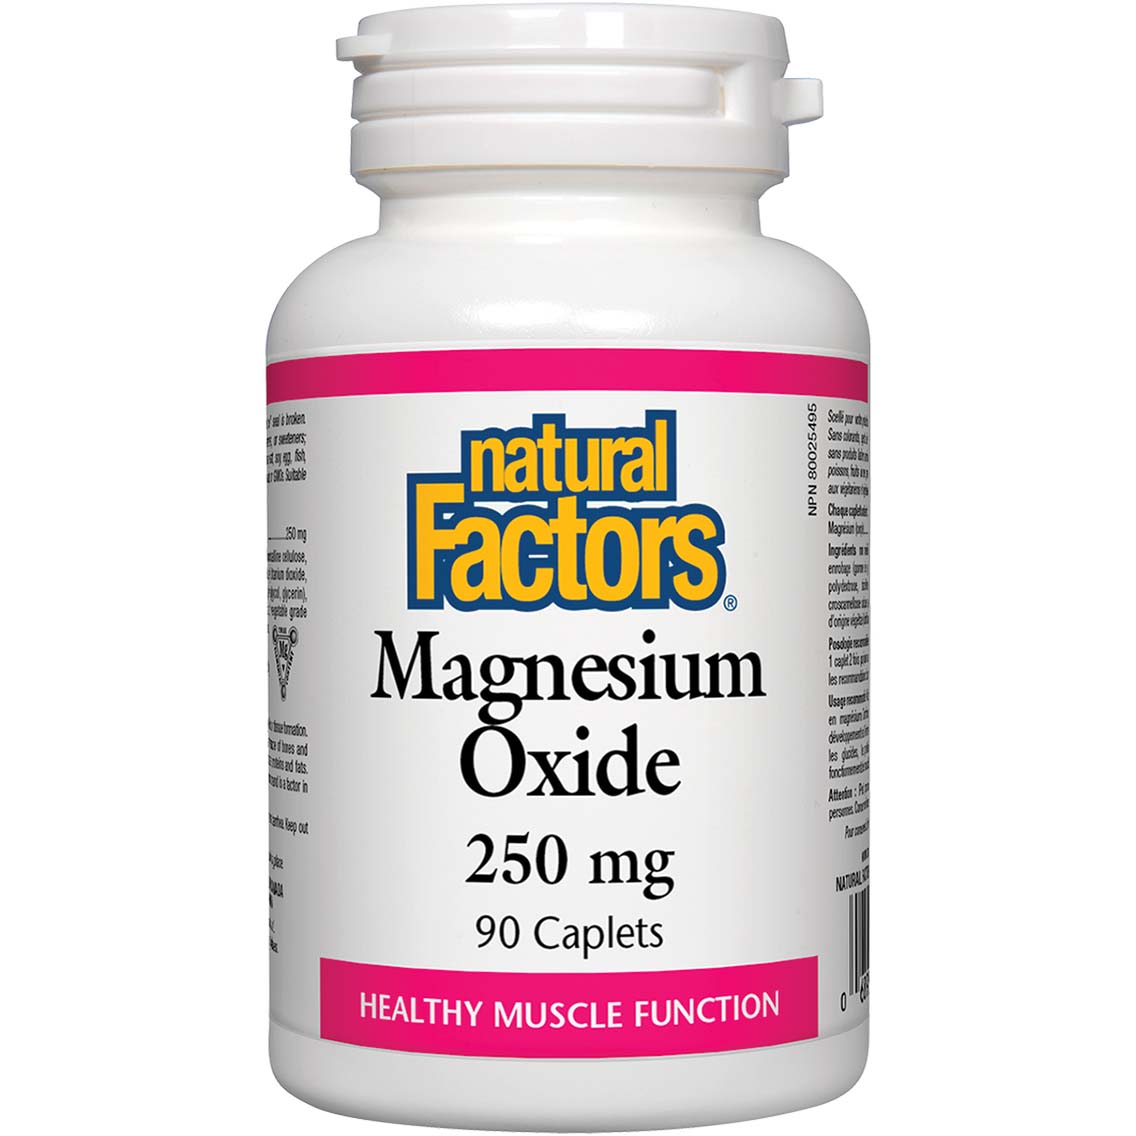 Natural Factors Magnesium Oxide, 250 mg, 90 Caplets